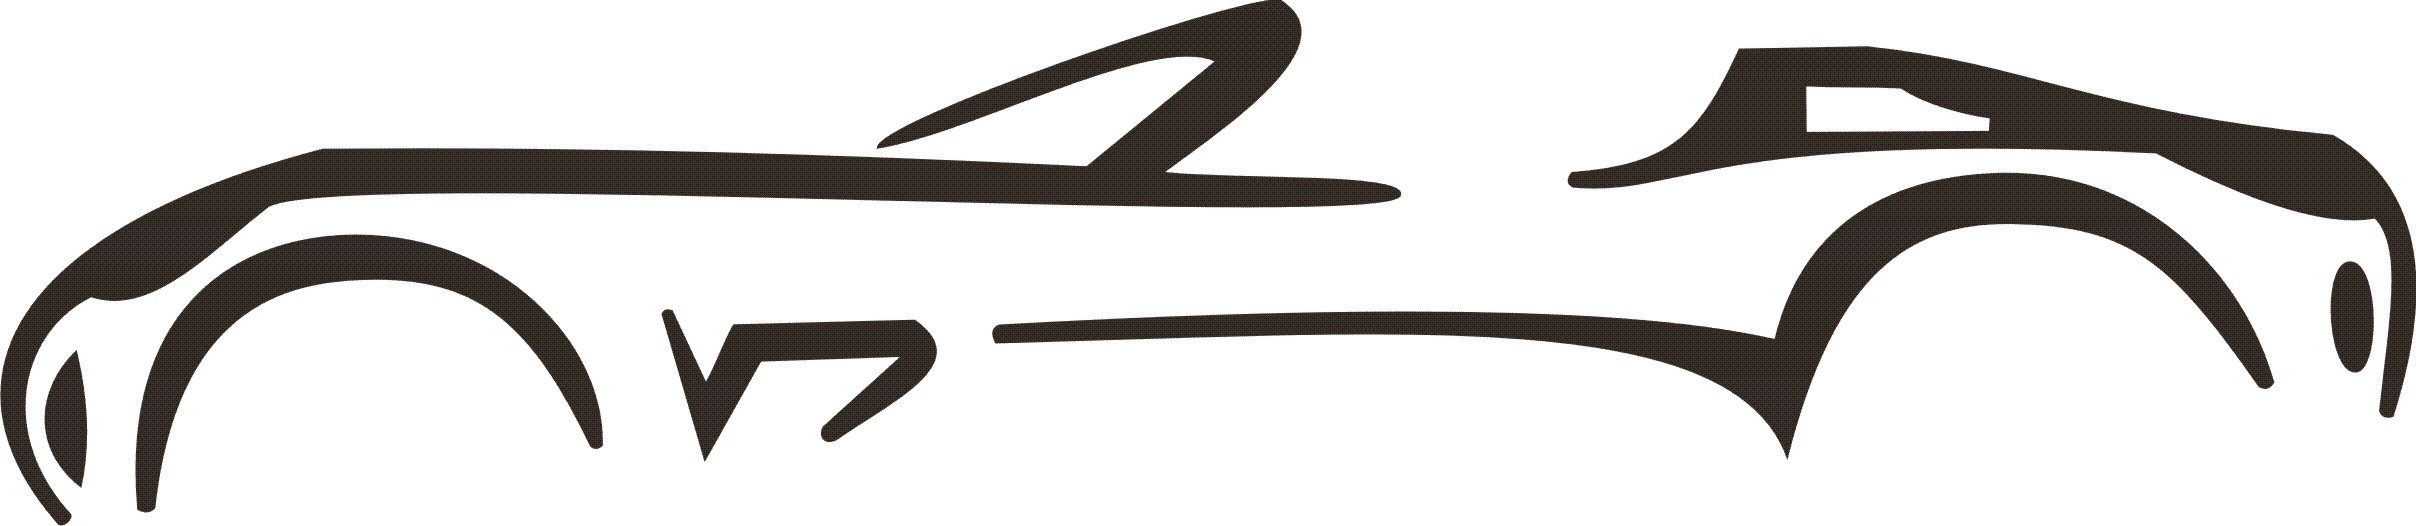 Solstice side logo/emblem